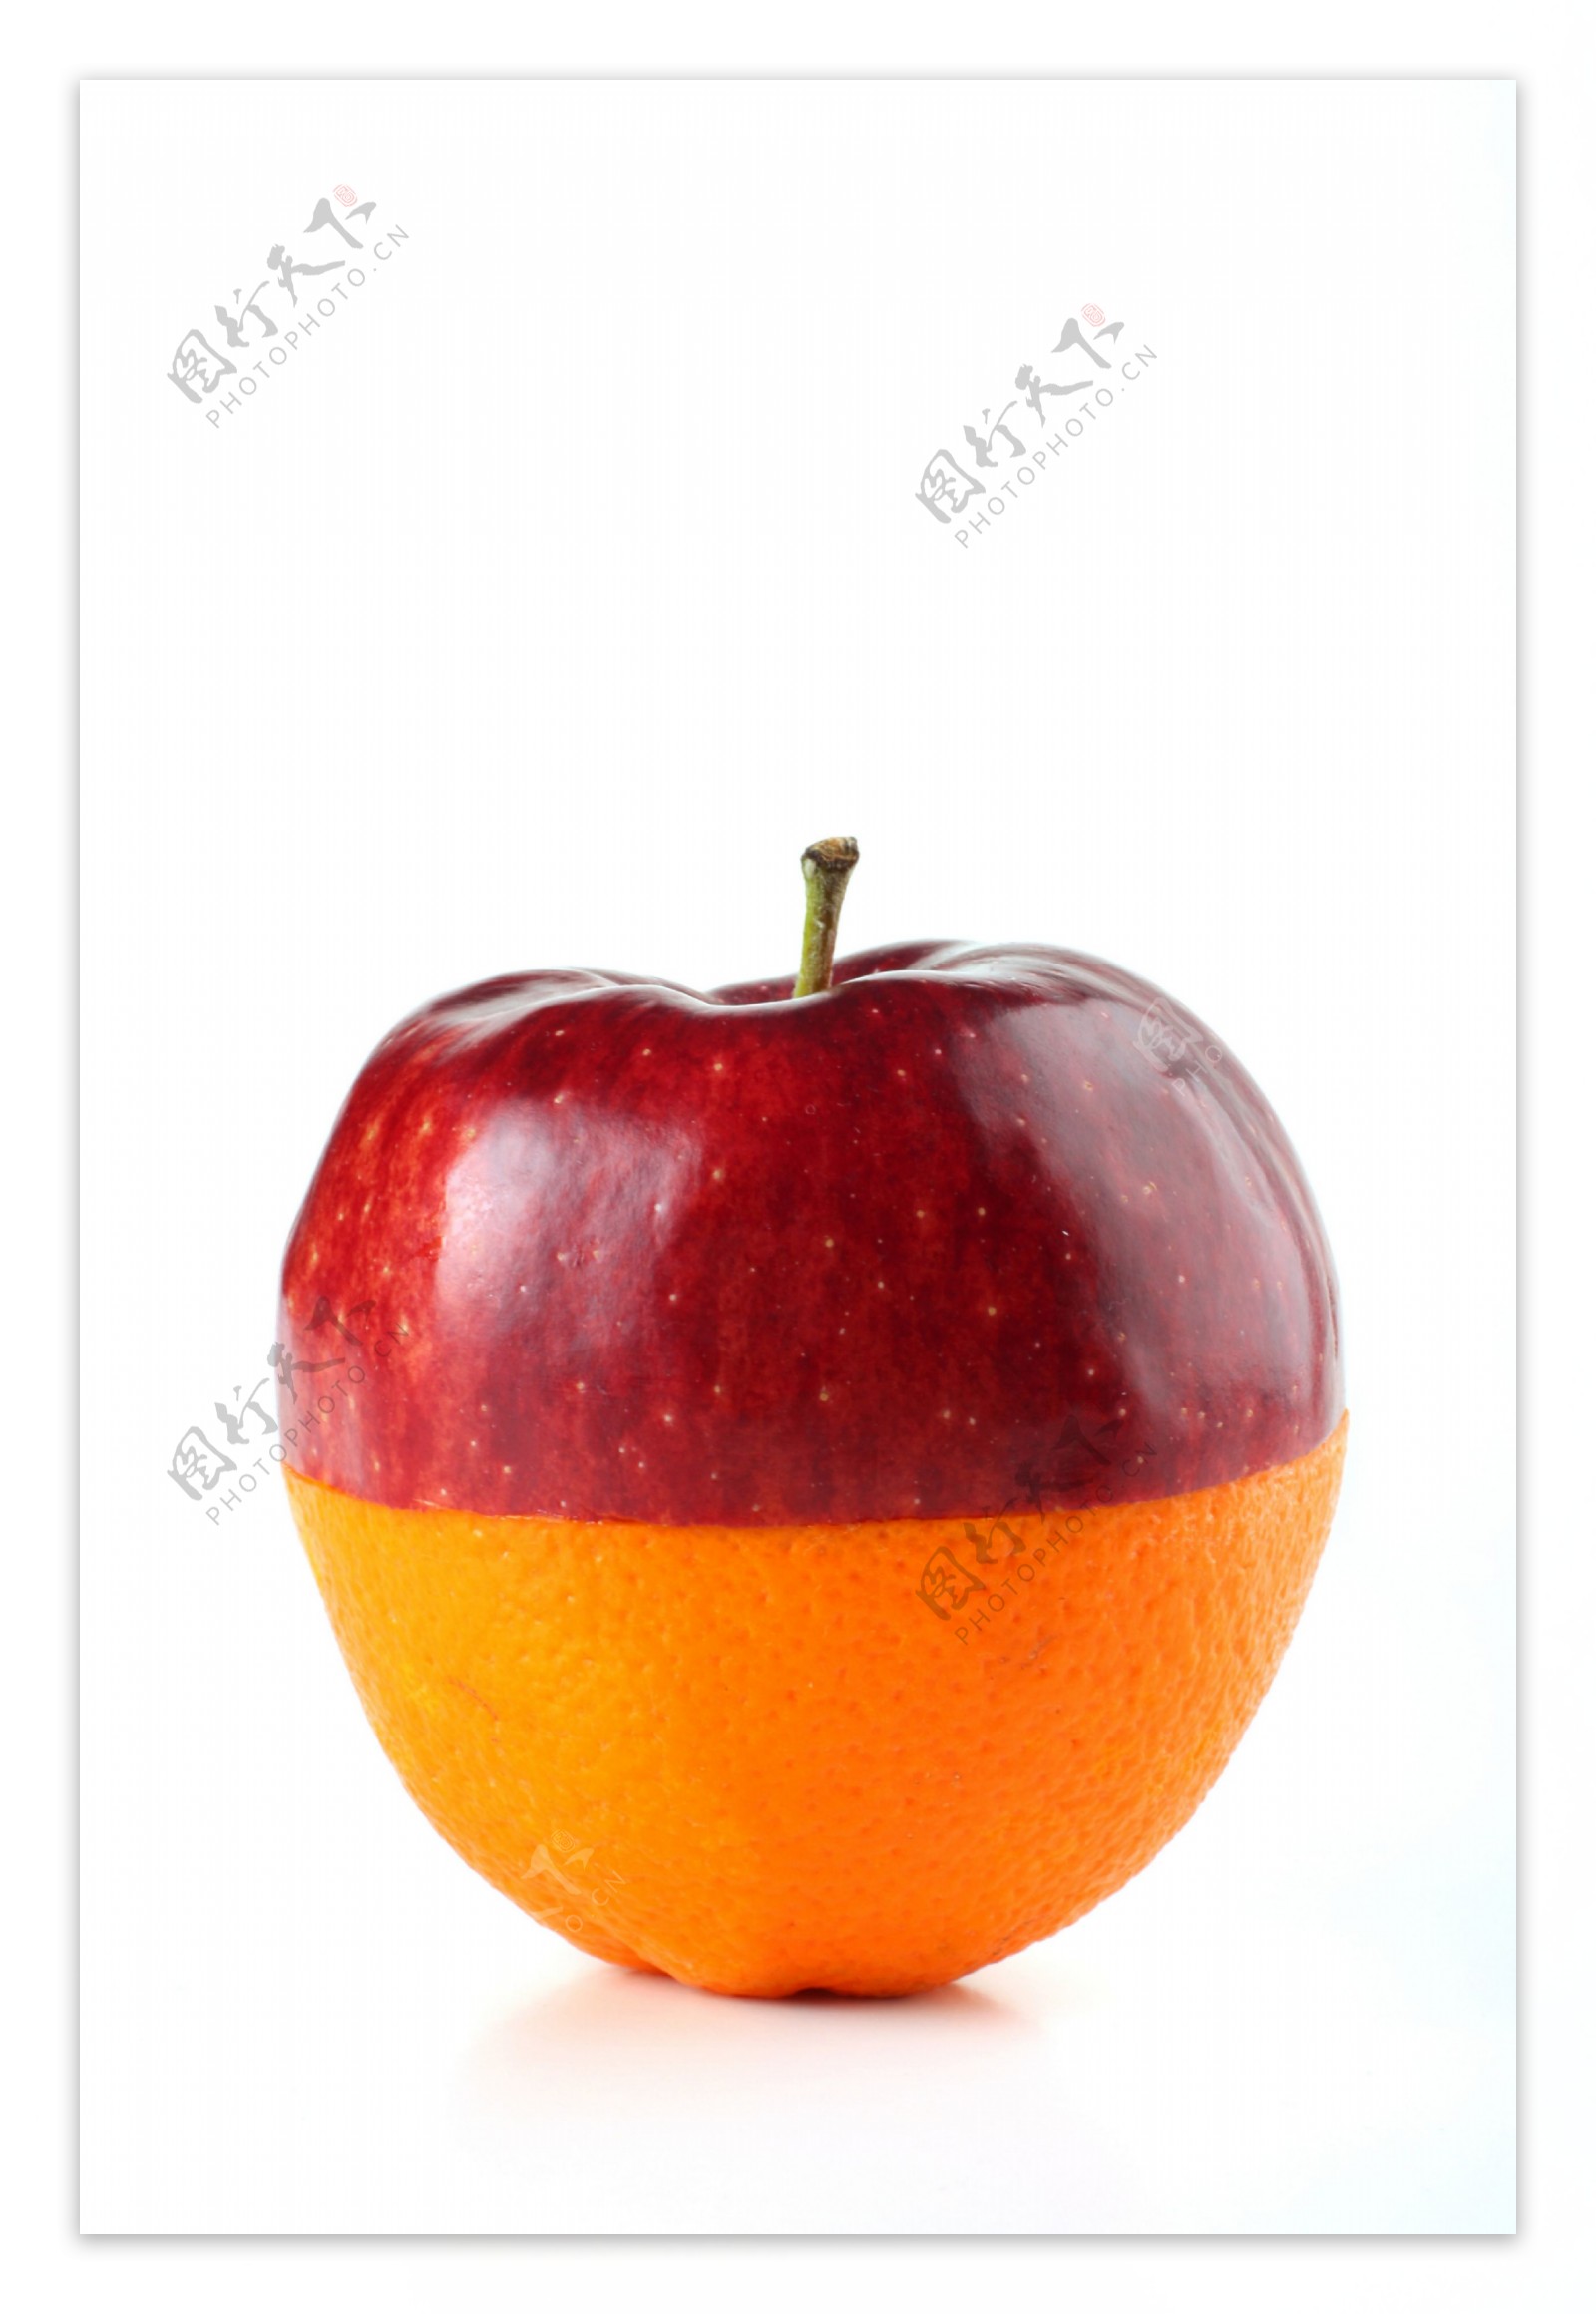 艺术苹果橙子组合图片